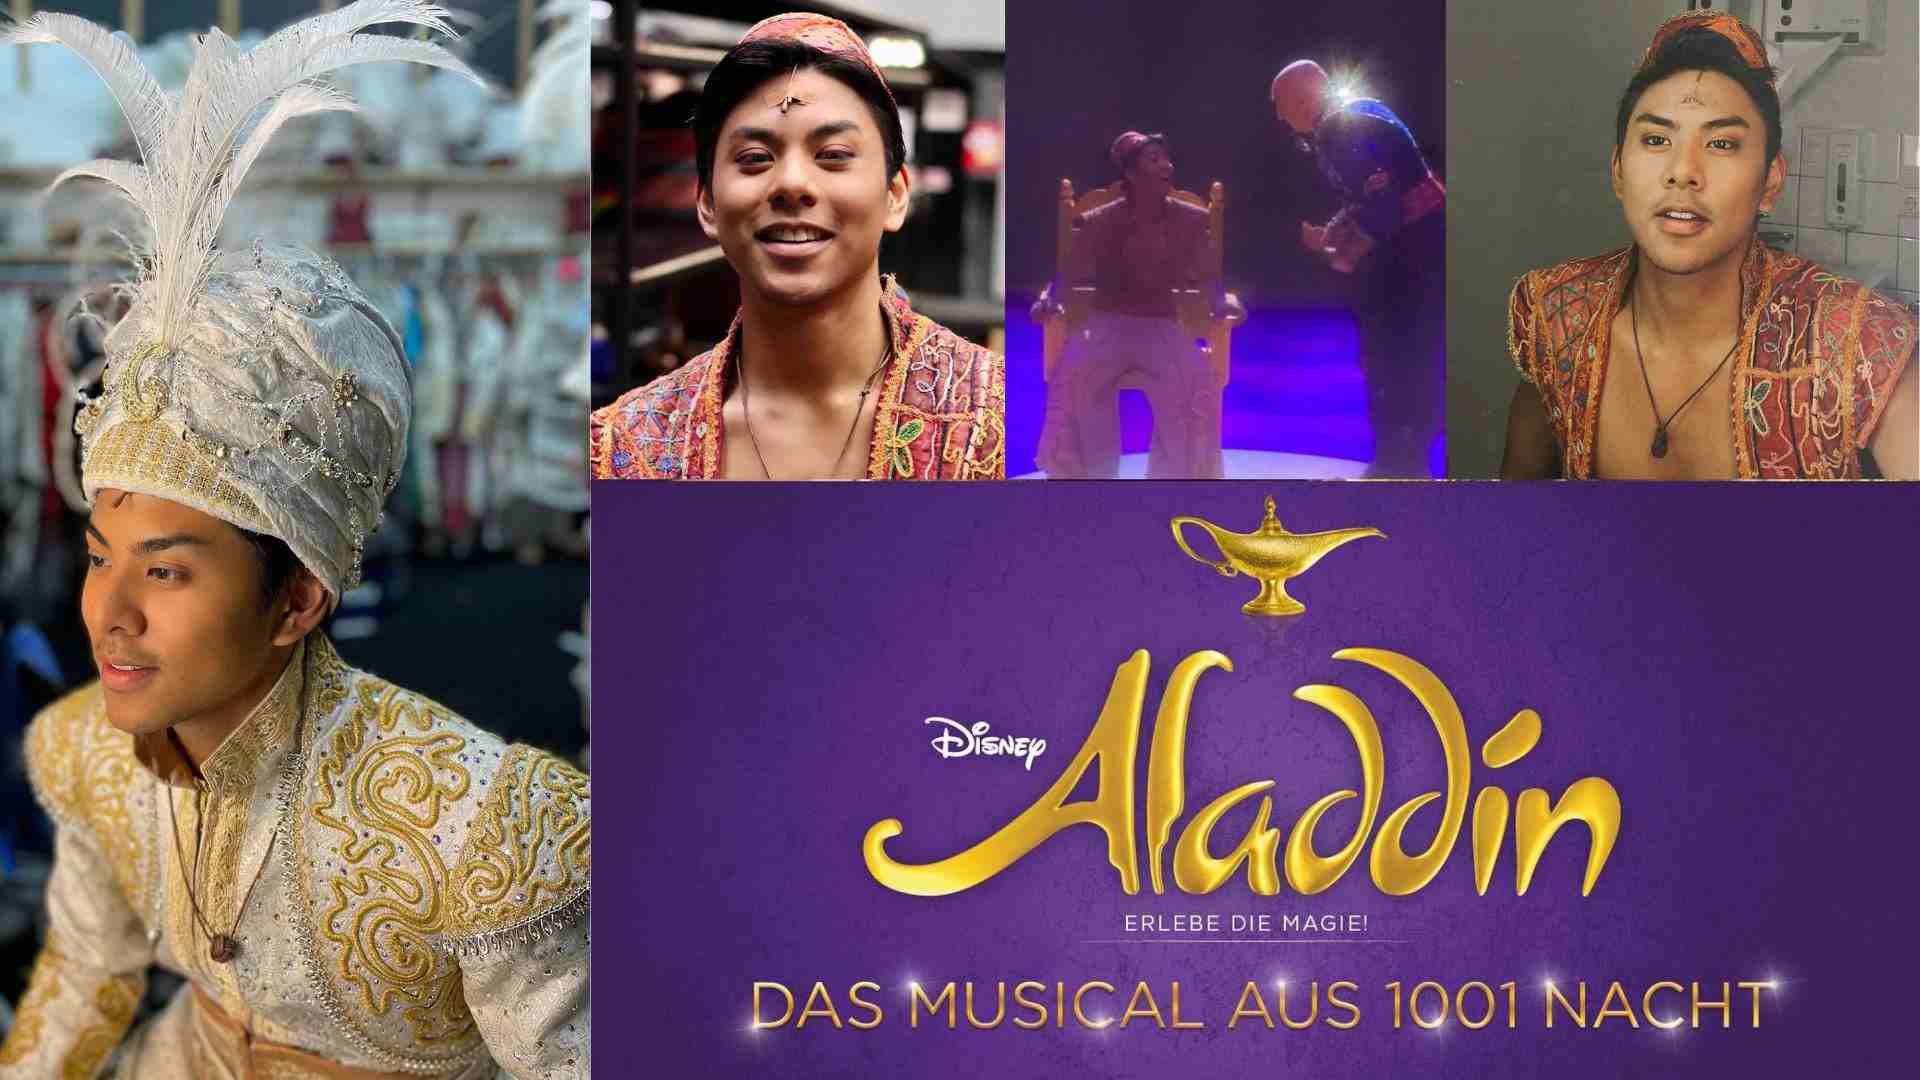 Edwin Parzefall Germany’s Aladdin musical